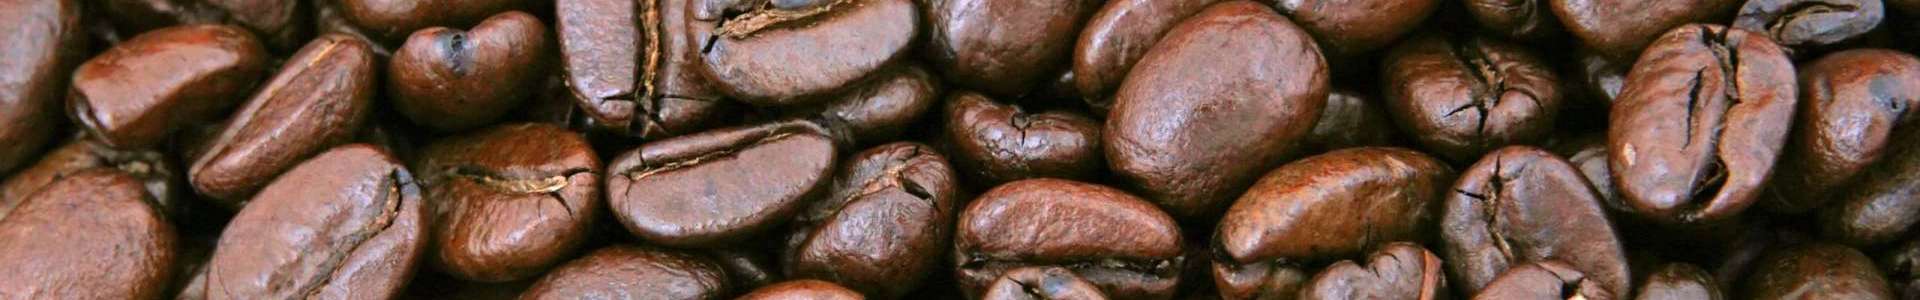 Kaffeesteuer – absurde 2,19€ pro Kilo Kaffee